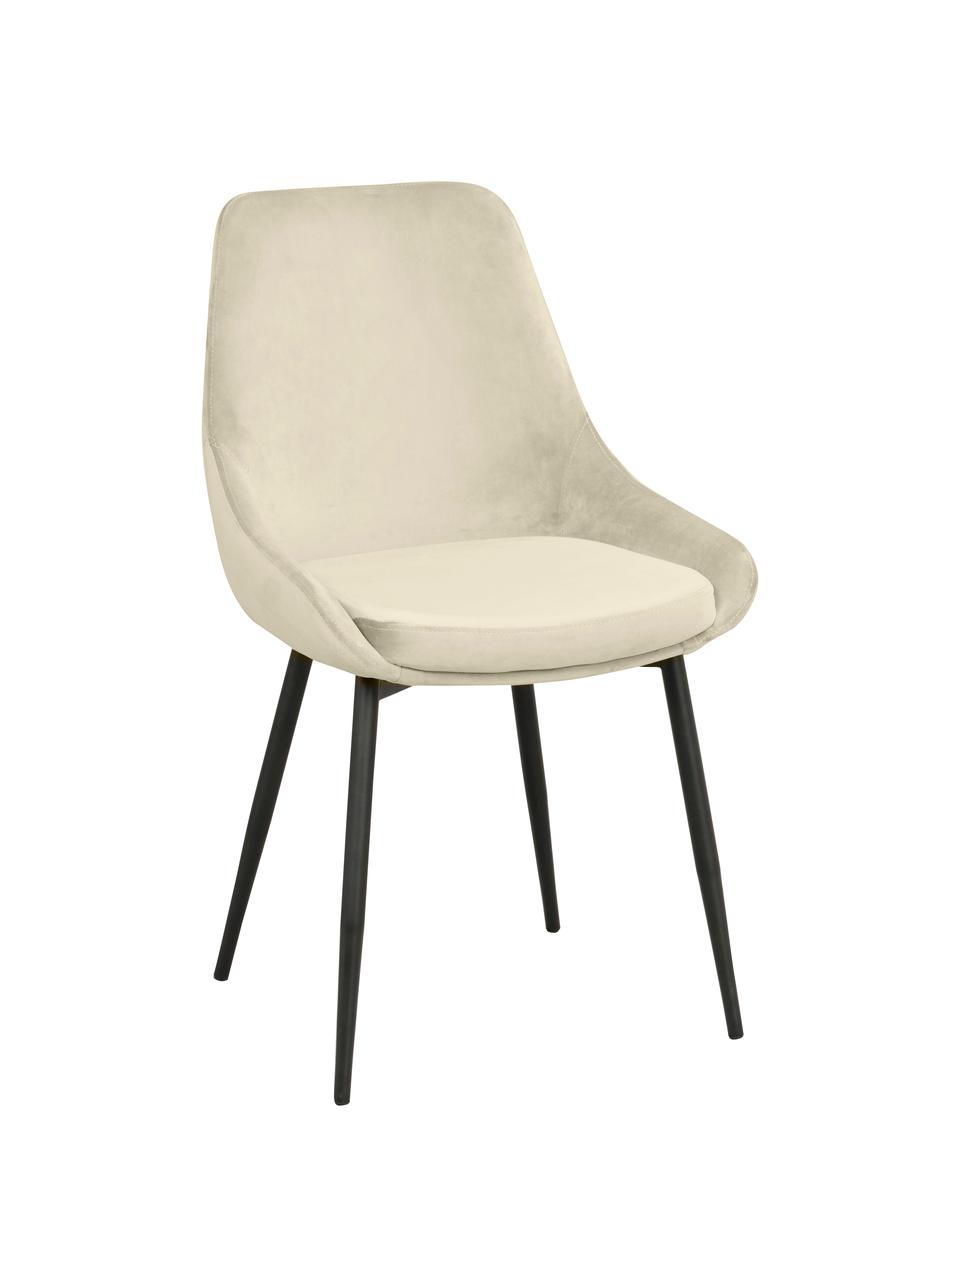 Krzesło tapicerowane z aksamitu Sierra, 2 szt., Tapicerka: aksamit poliestrowy Dzięk, Nogi: metal lakierowany, Beżowy aksamit, S 49 x G 55 cm